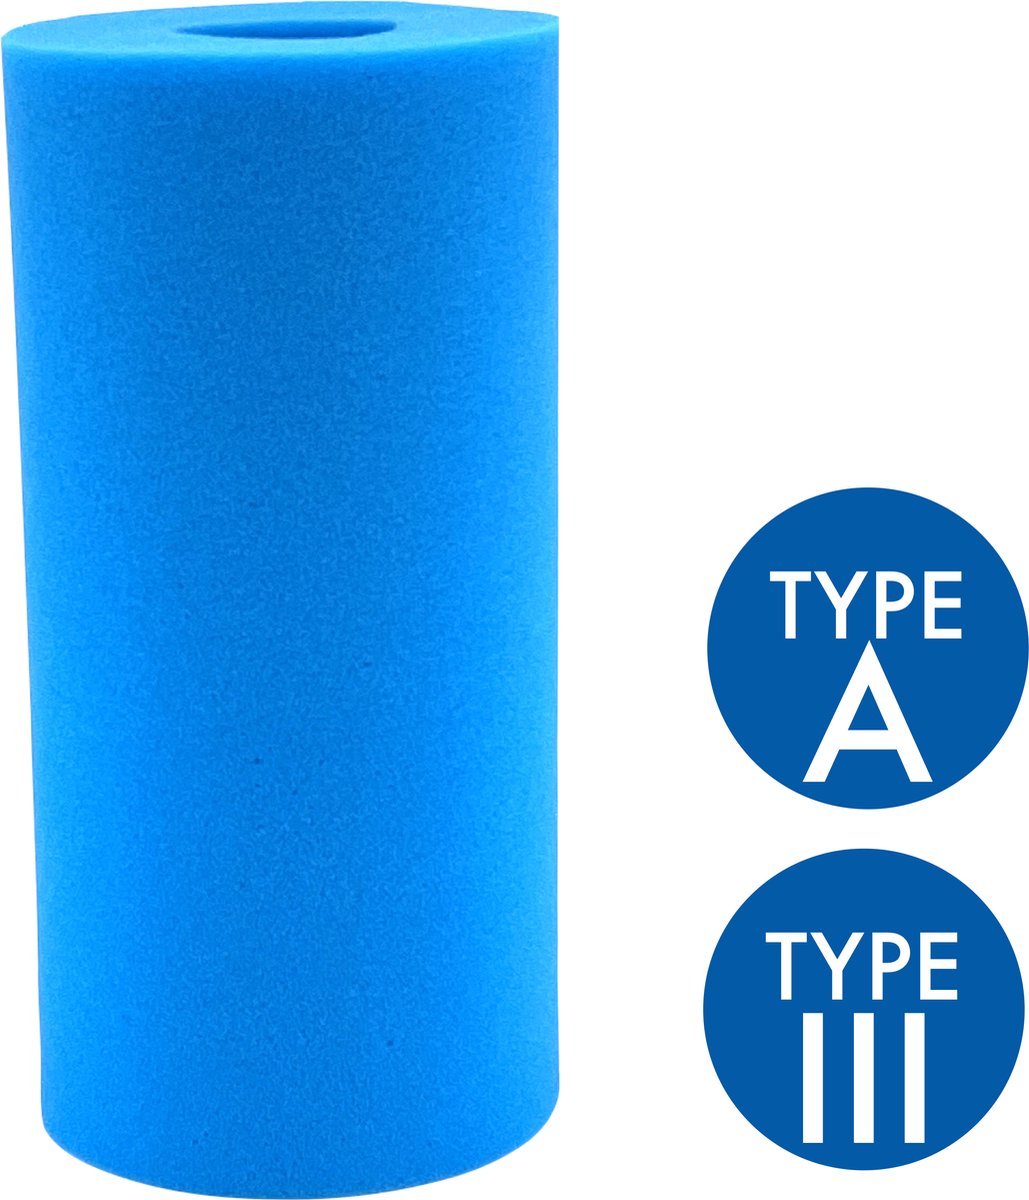 1x Zwembad Filter Cartridge - Uitwasbaar - 4x Duurzamer - Geschikt voor Intex Type A & Bestway Type III - Foam Filter voor Zwembad Onderhoud - Zwembadfilter Cartridge